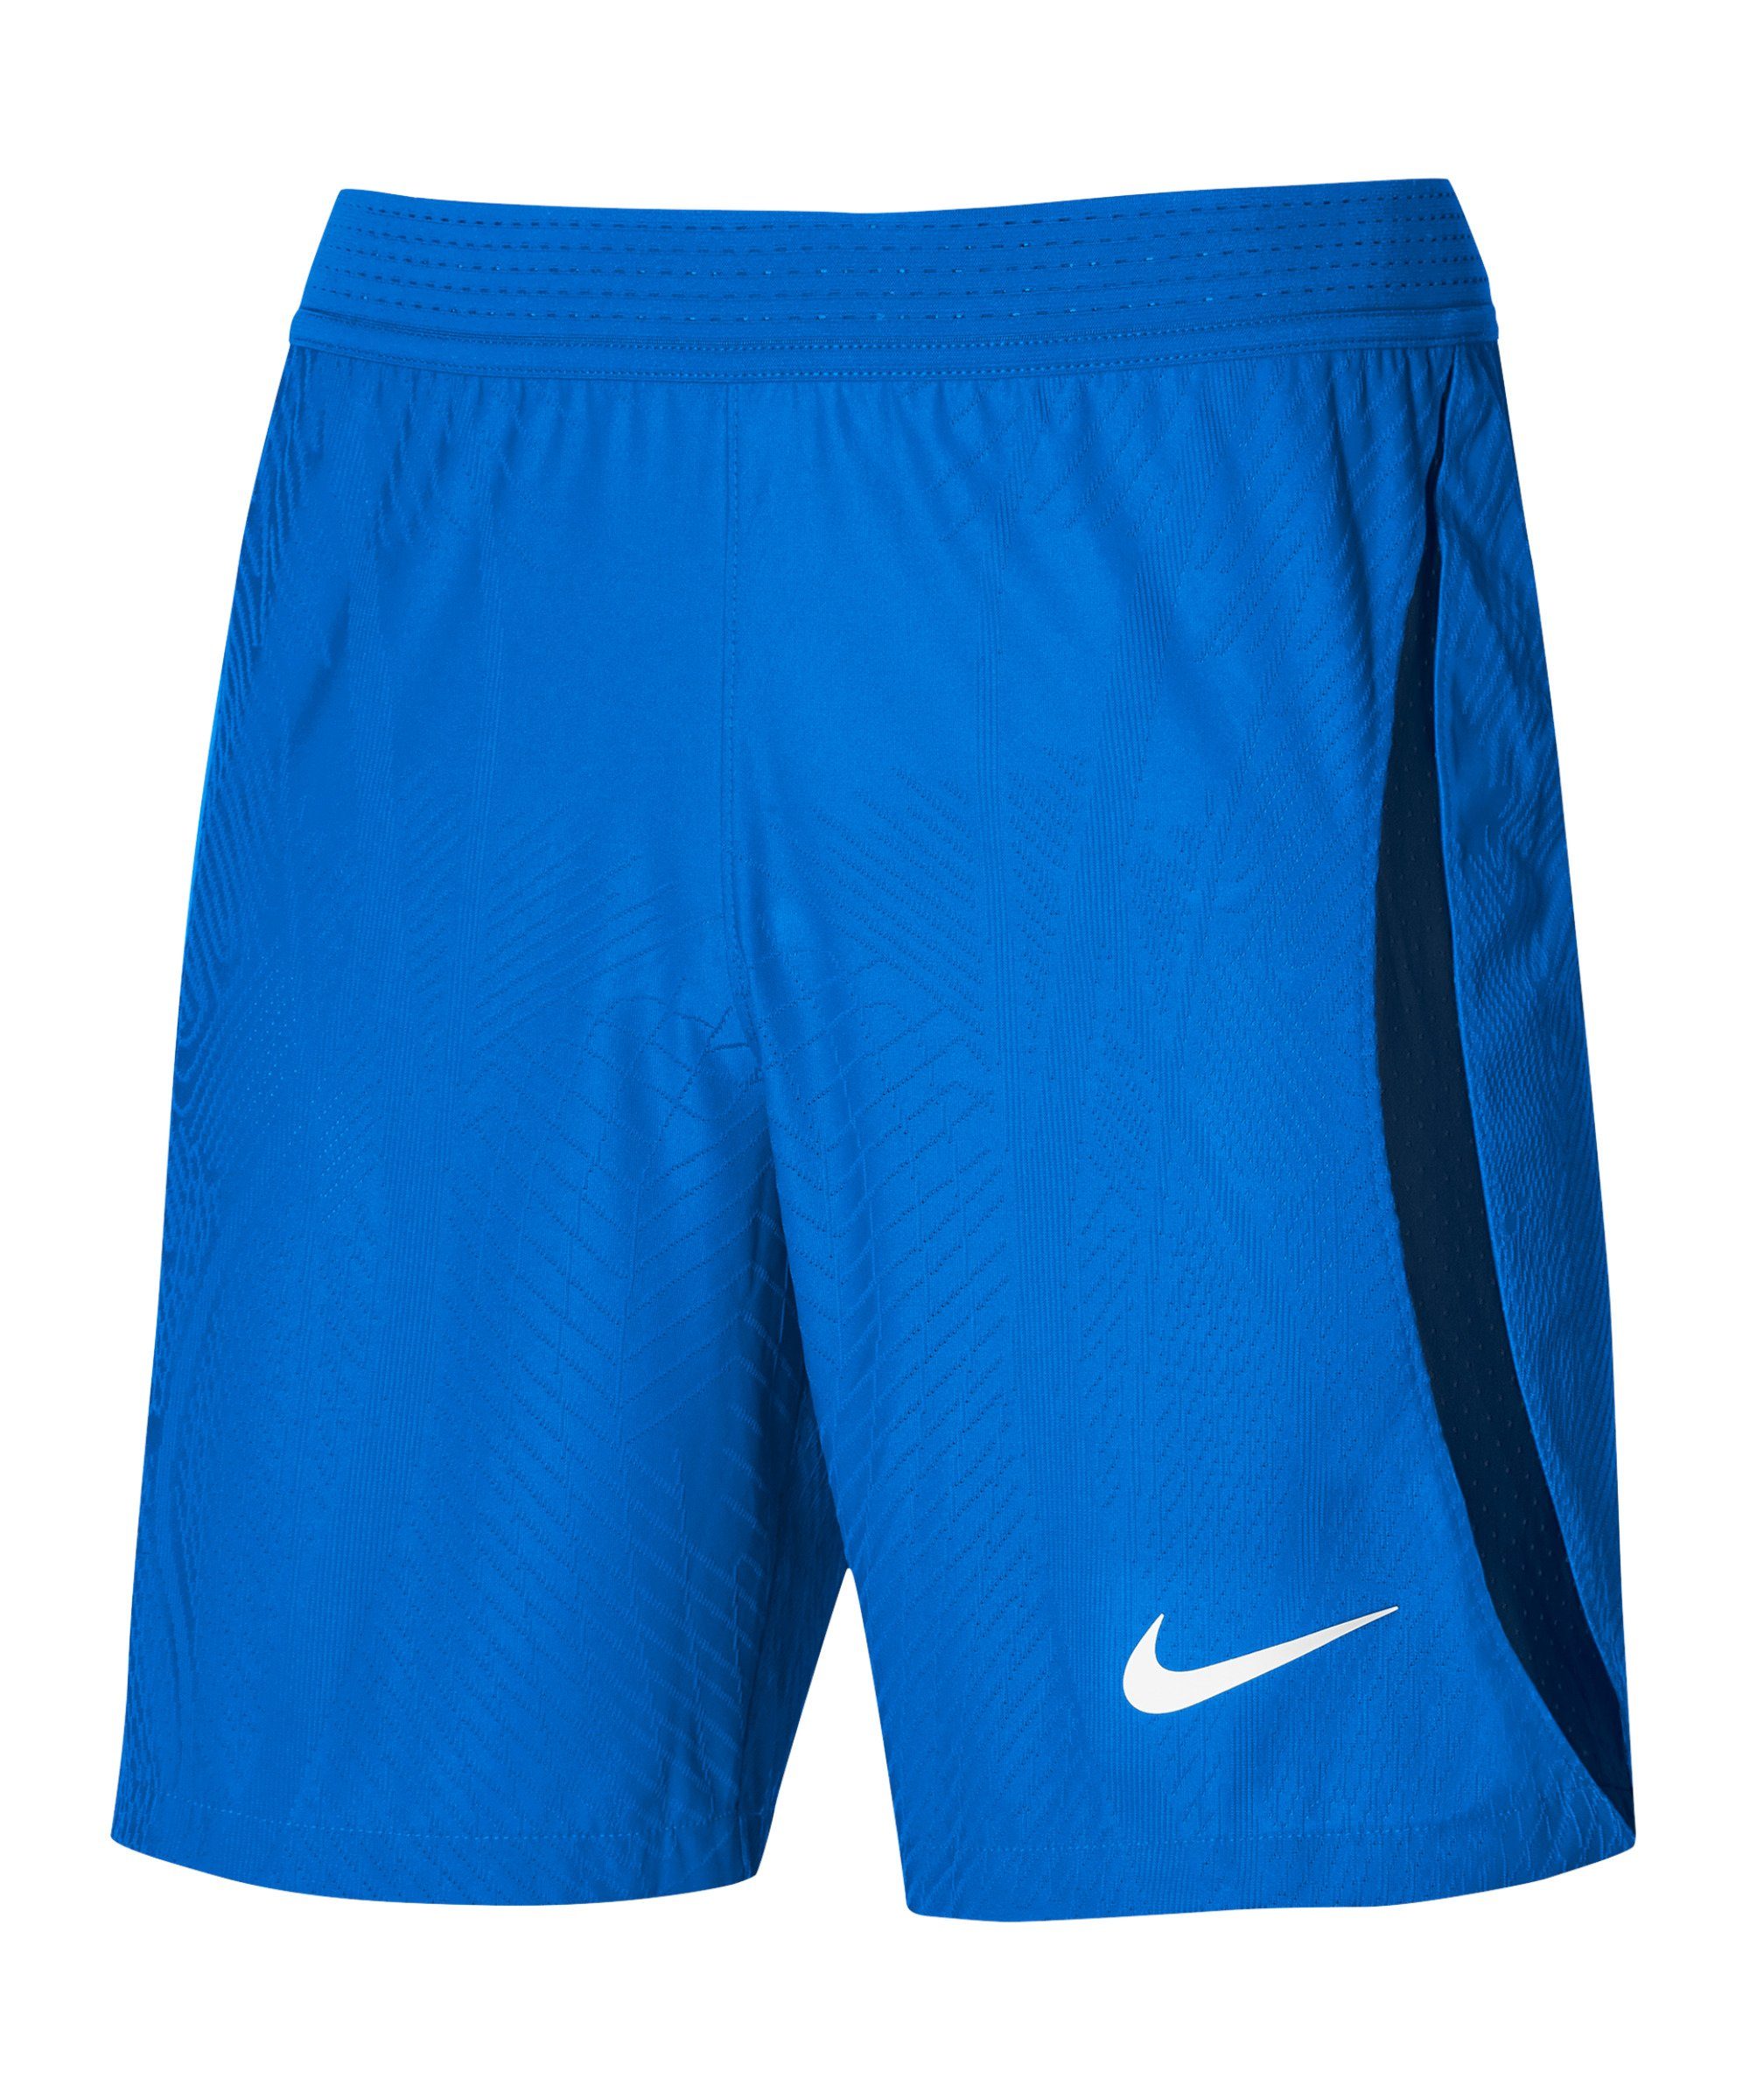 Nike Sporthose ADV Vaporknit IV Short dunkelblaublauweiss